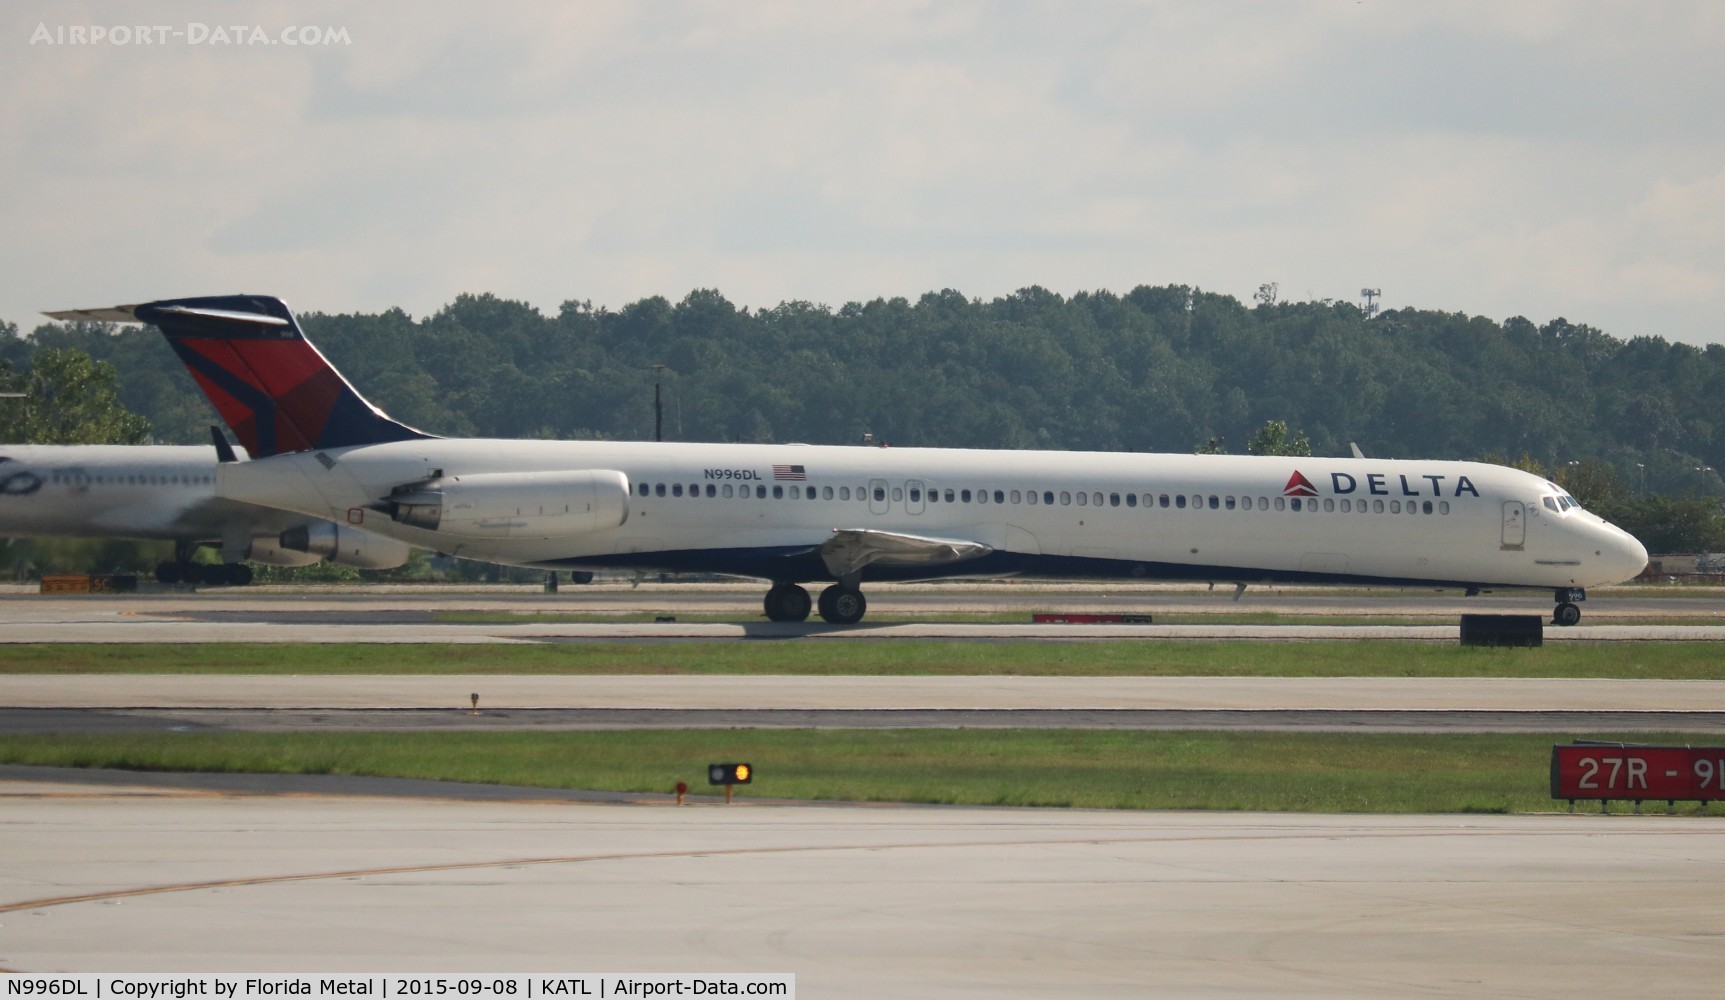 N996DL, 1991 McDonnell Douglas MD-88 C/N 53363, Delta at ATL